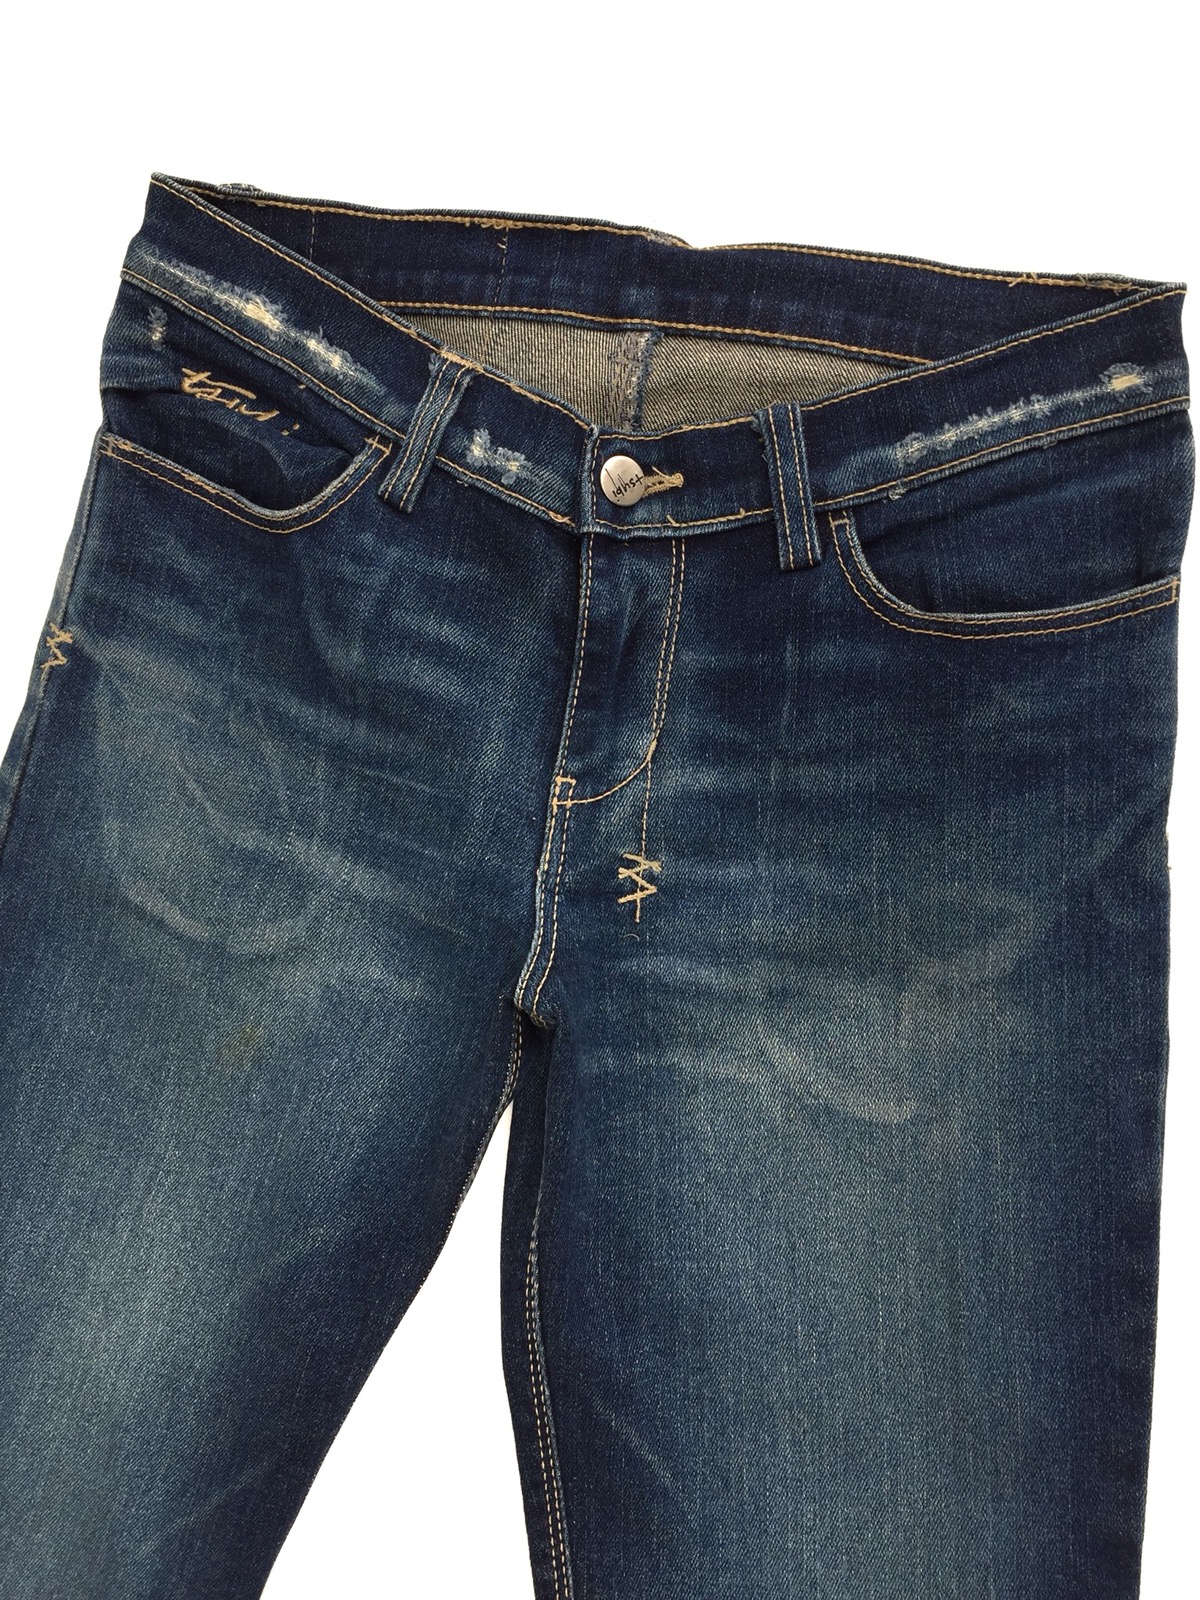 KSUBI Distressed Rip Van Winkle Jeans - 5